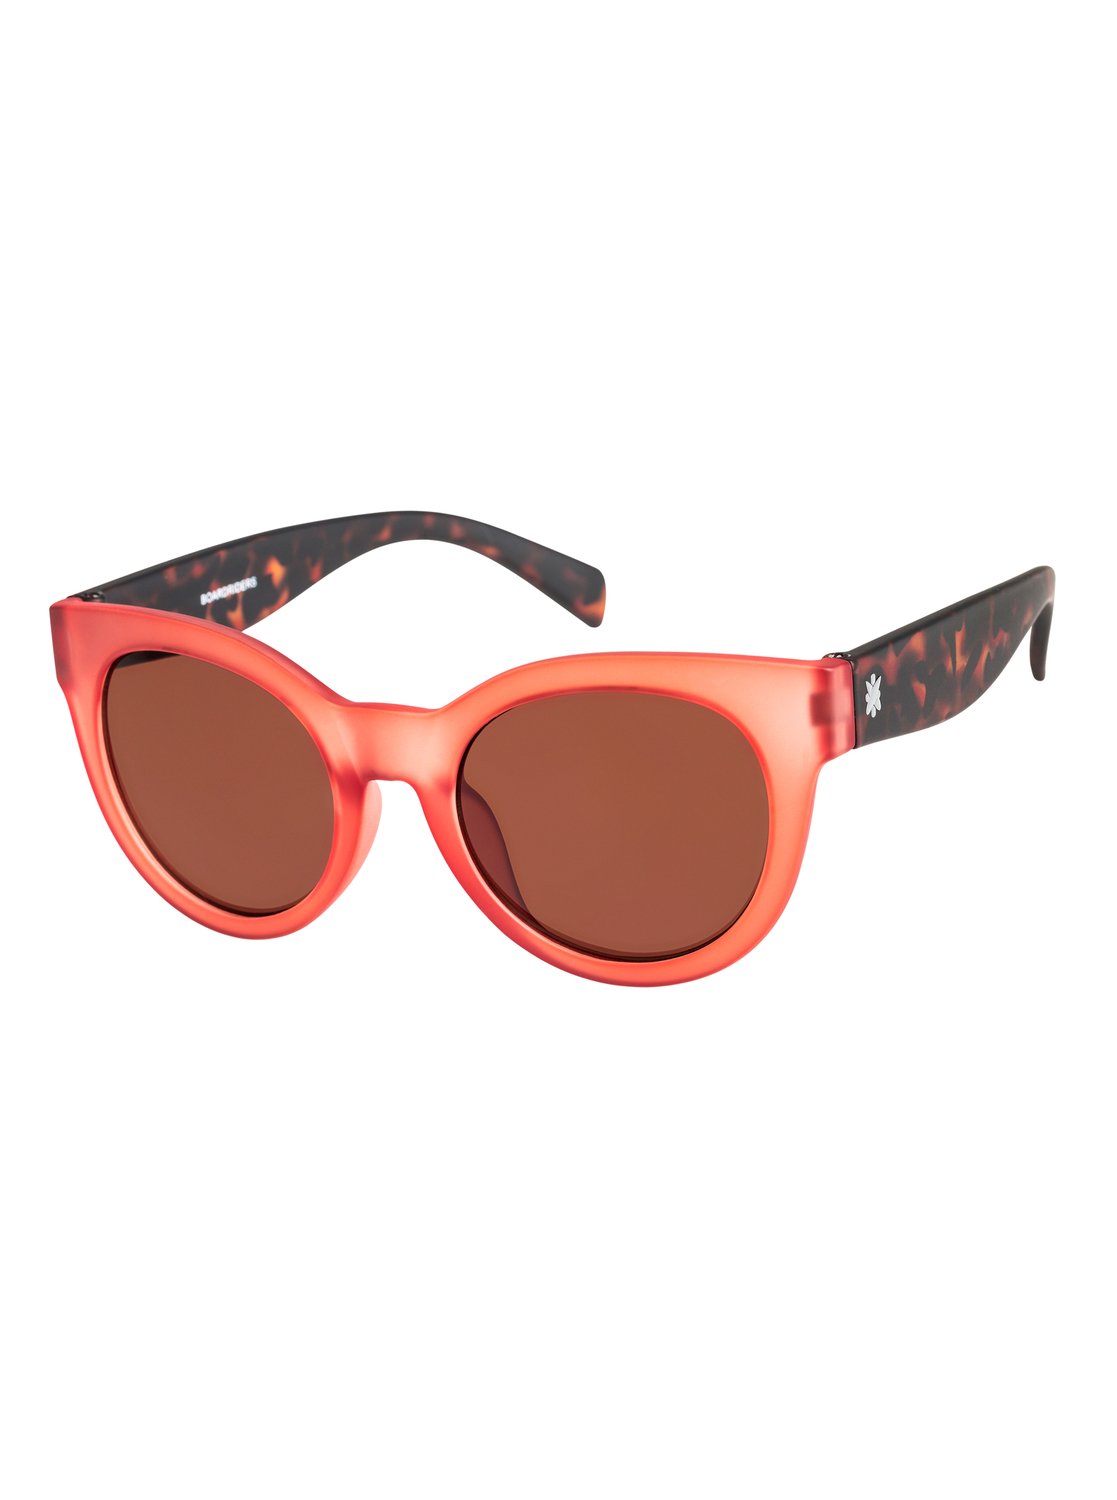 Boardriders Sunglasses